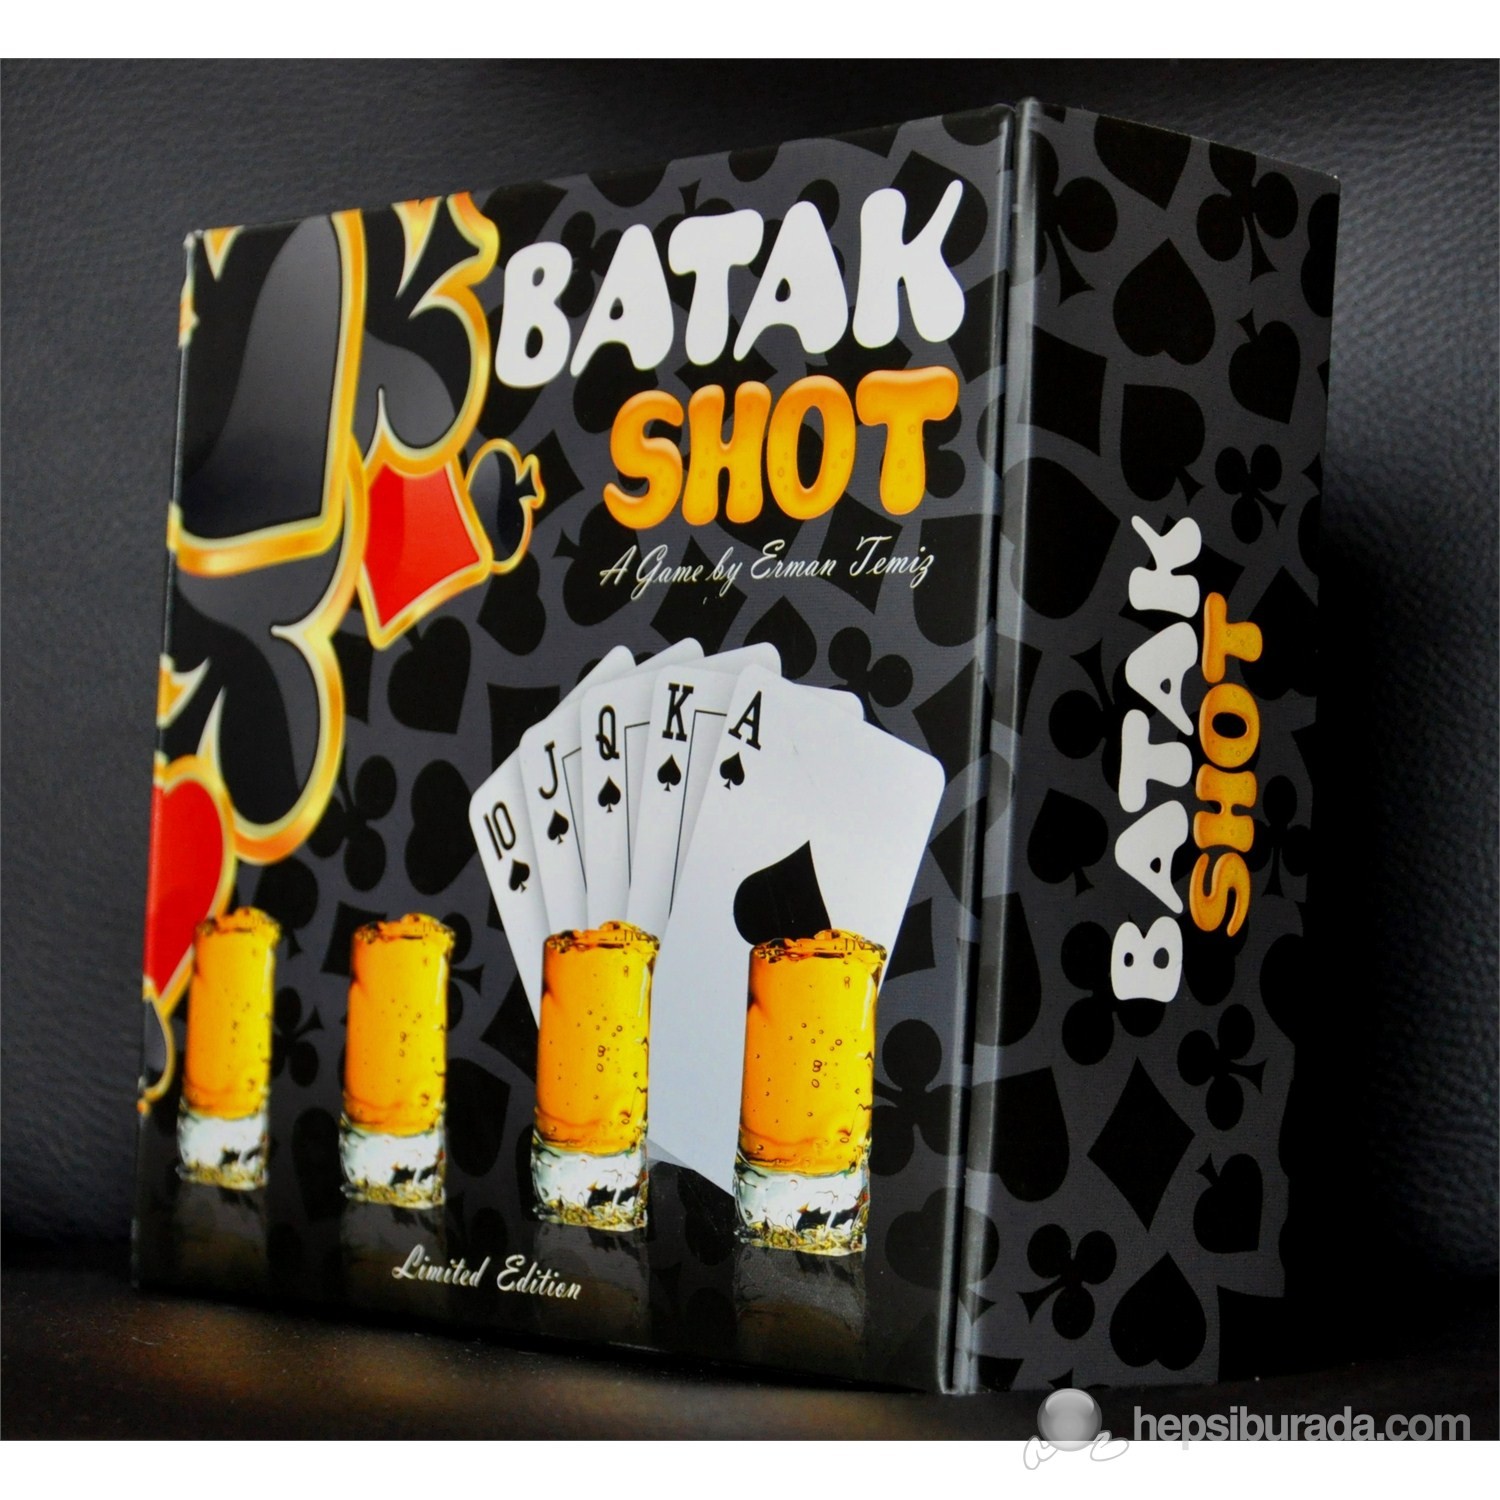 Mini Dart Shot Oyunu - İki eğlenceyi birleştiren muhteşem oyun!